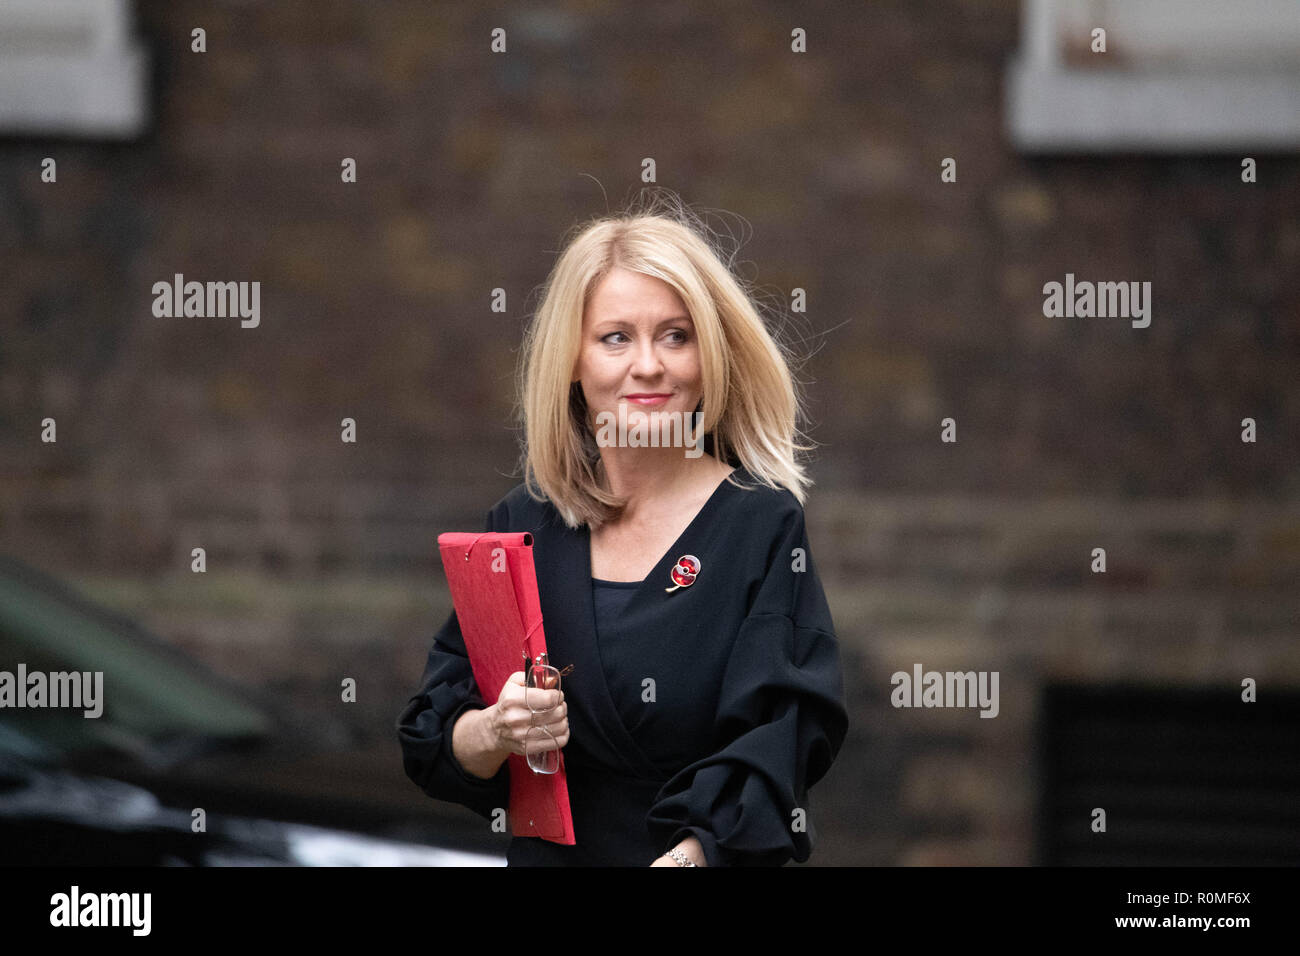 Londres, Royaume-Uni. 6 novembre 2018, Esther McVey MP PC du travail et des retraites arrive à une réunion du Cabinet au 10 Downing Street, Londres, Royaume-Uni. Ian Davidson Crédit/Alamy Live News Banque D'Images